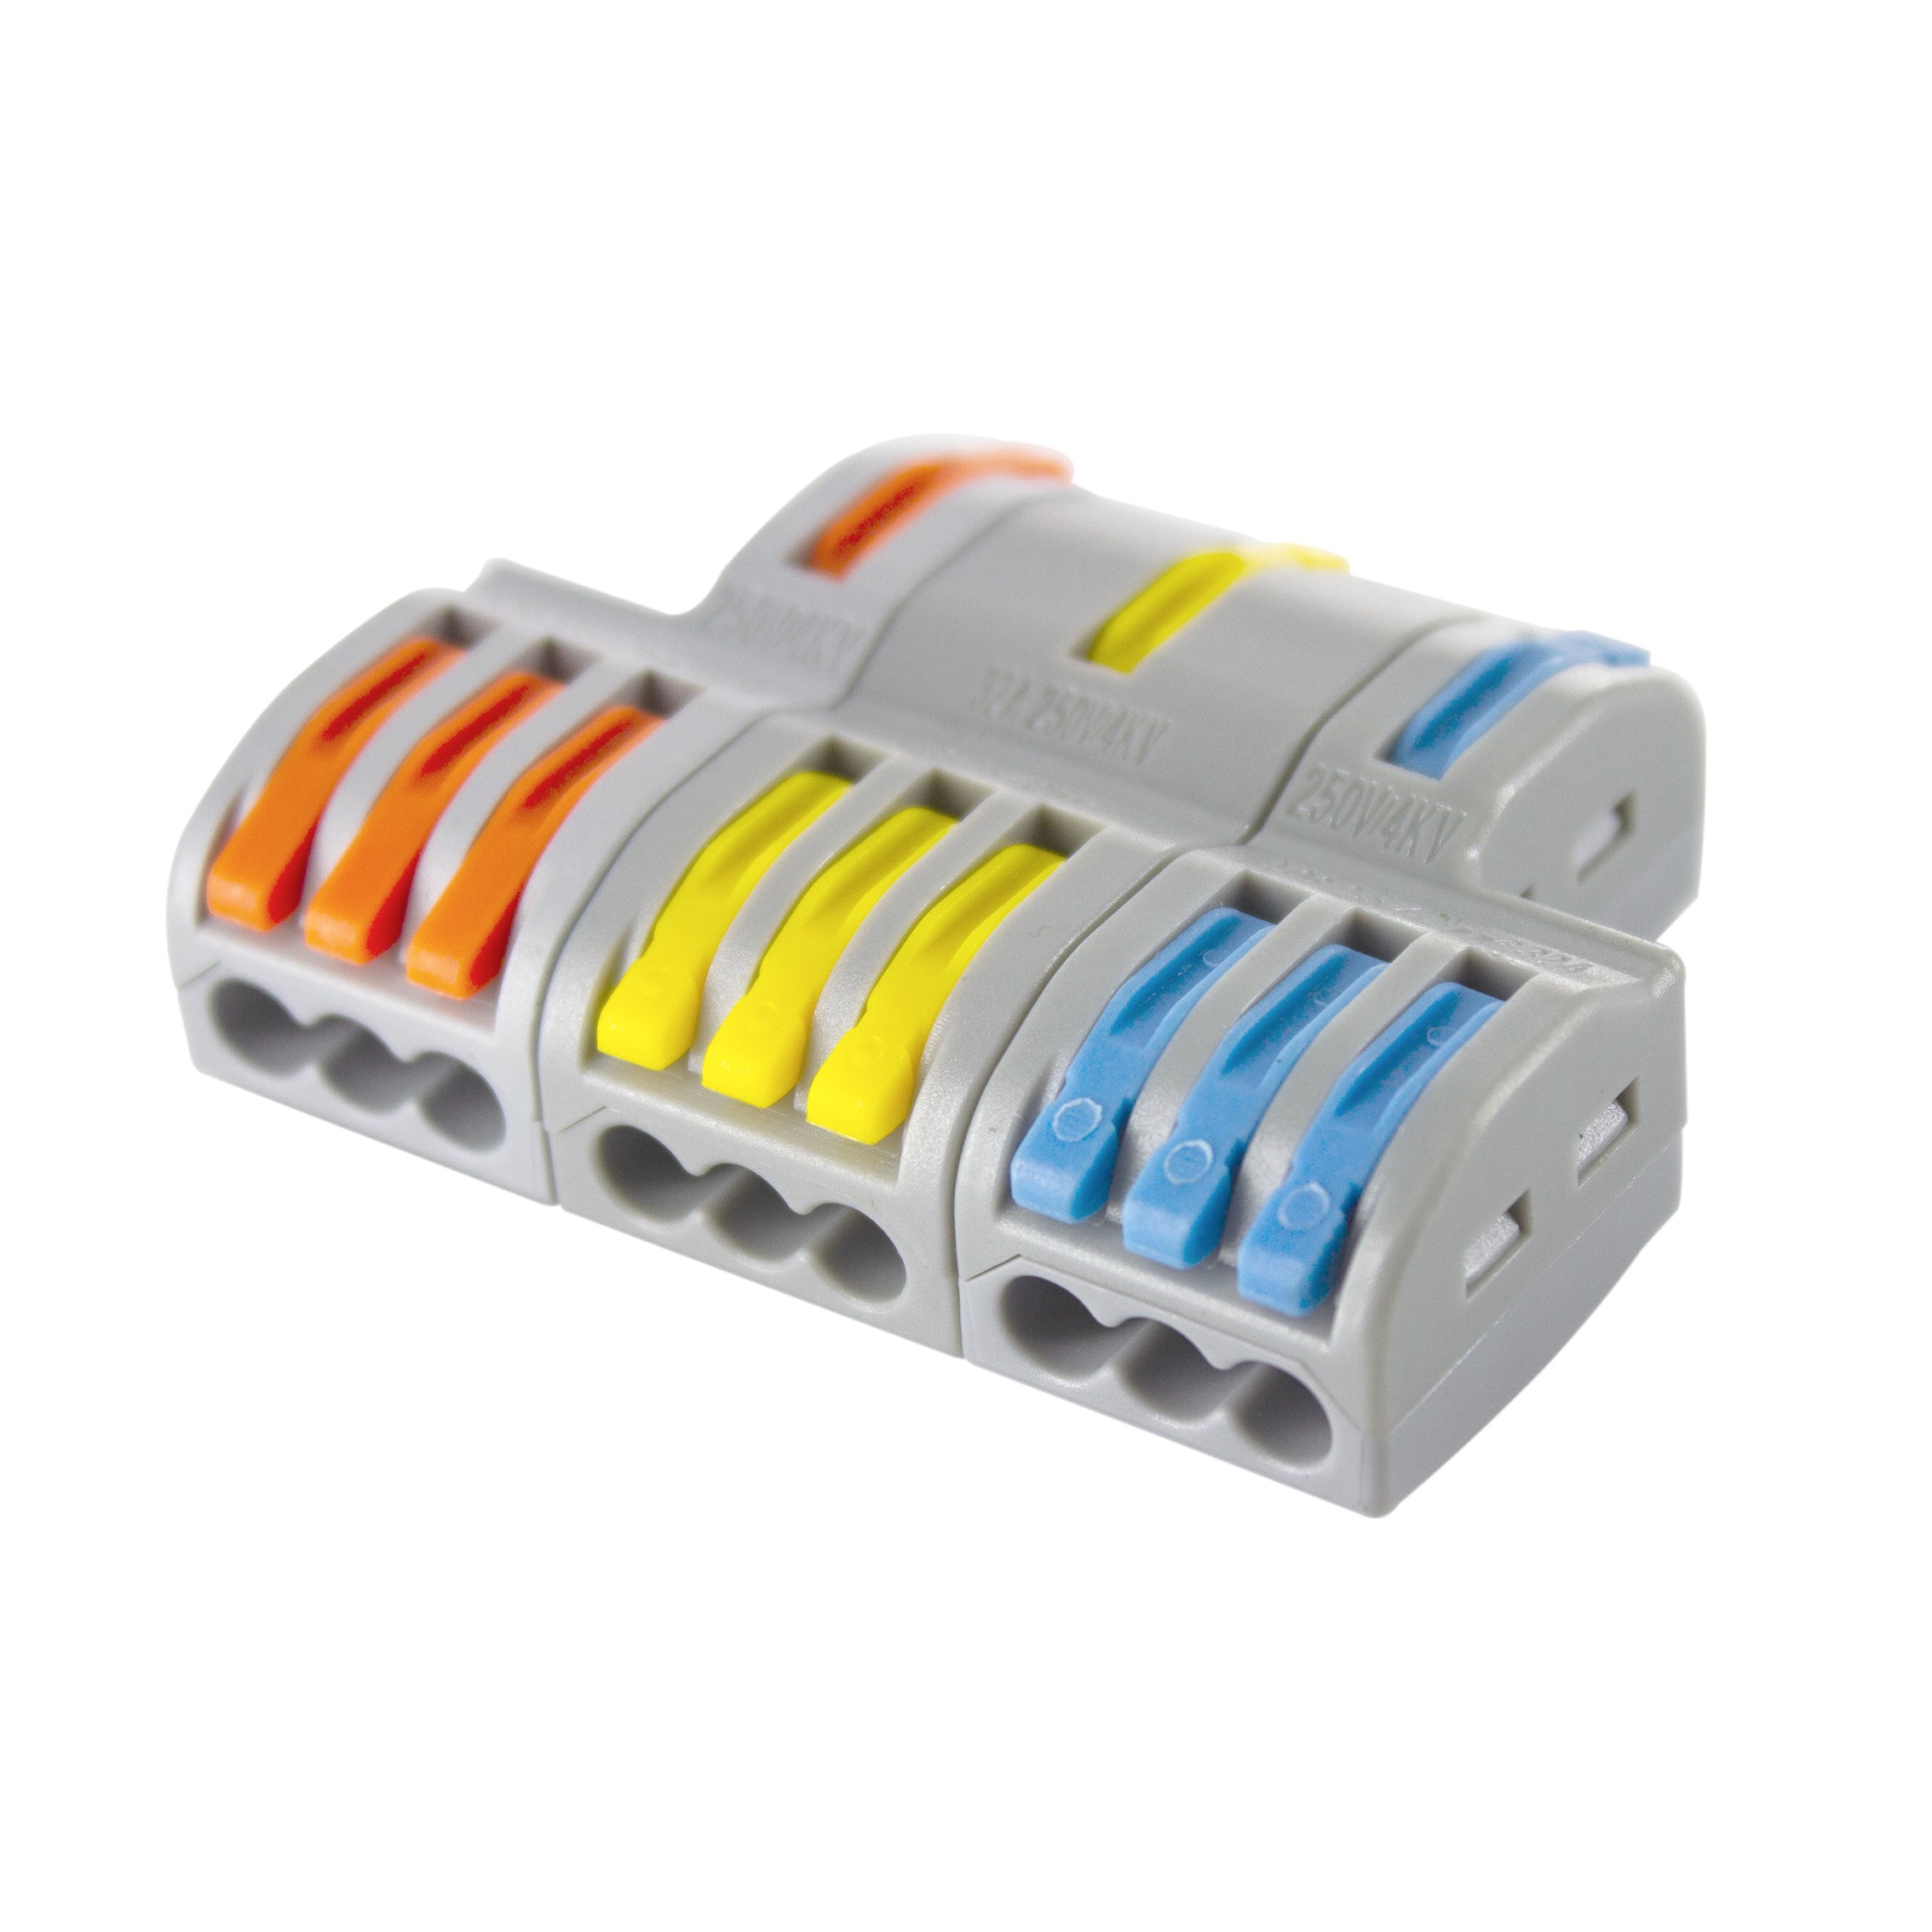 Connecteur rapide 3 fils rigides polybag 20pcs - Connecteurs étanches et  Boîtes de dérivation - Rêvenergie